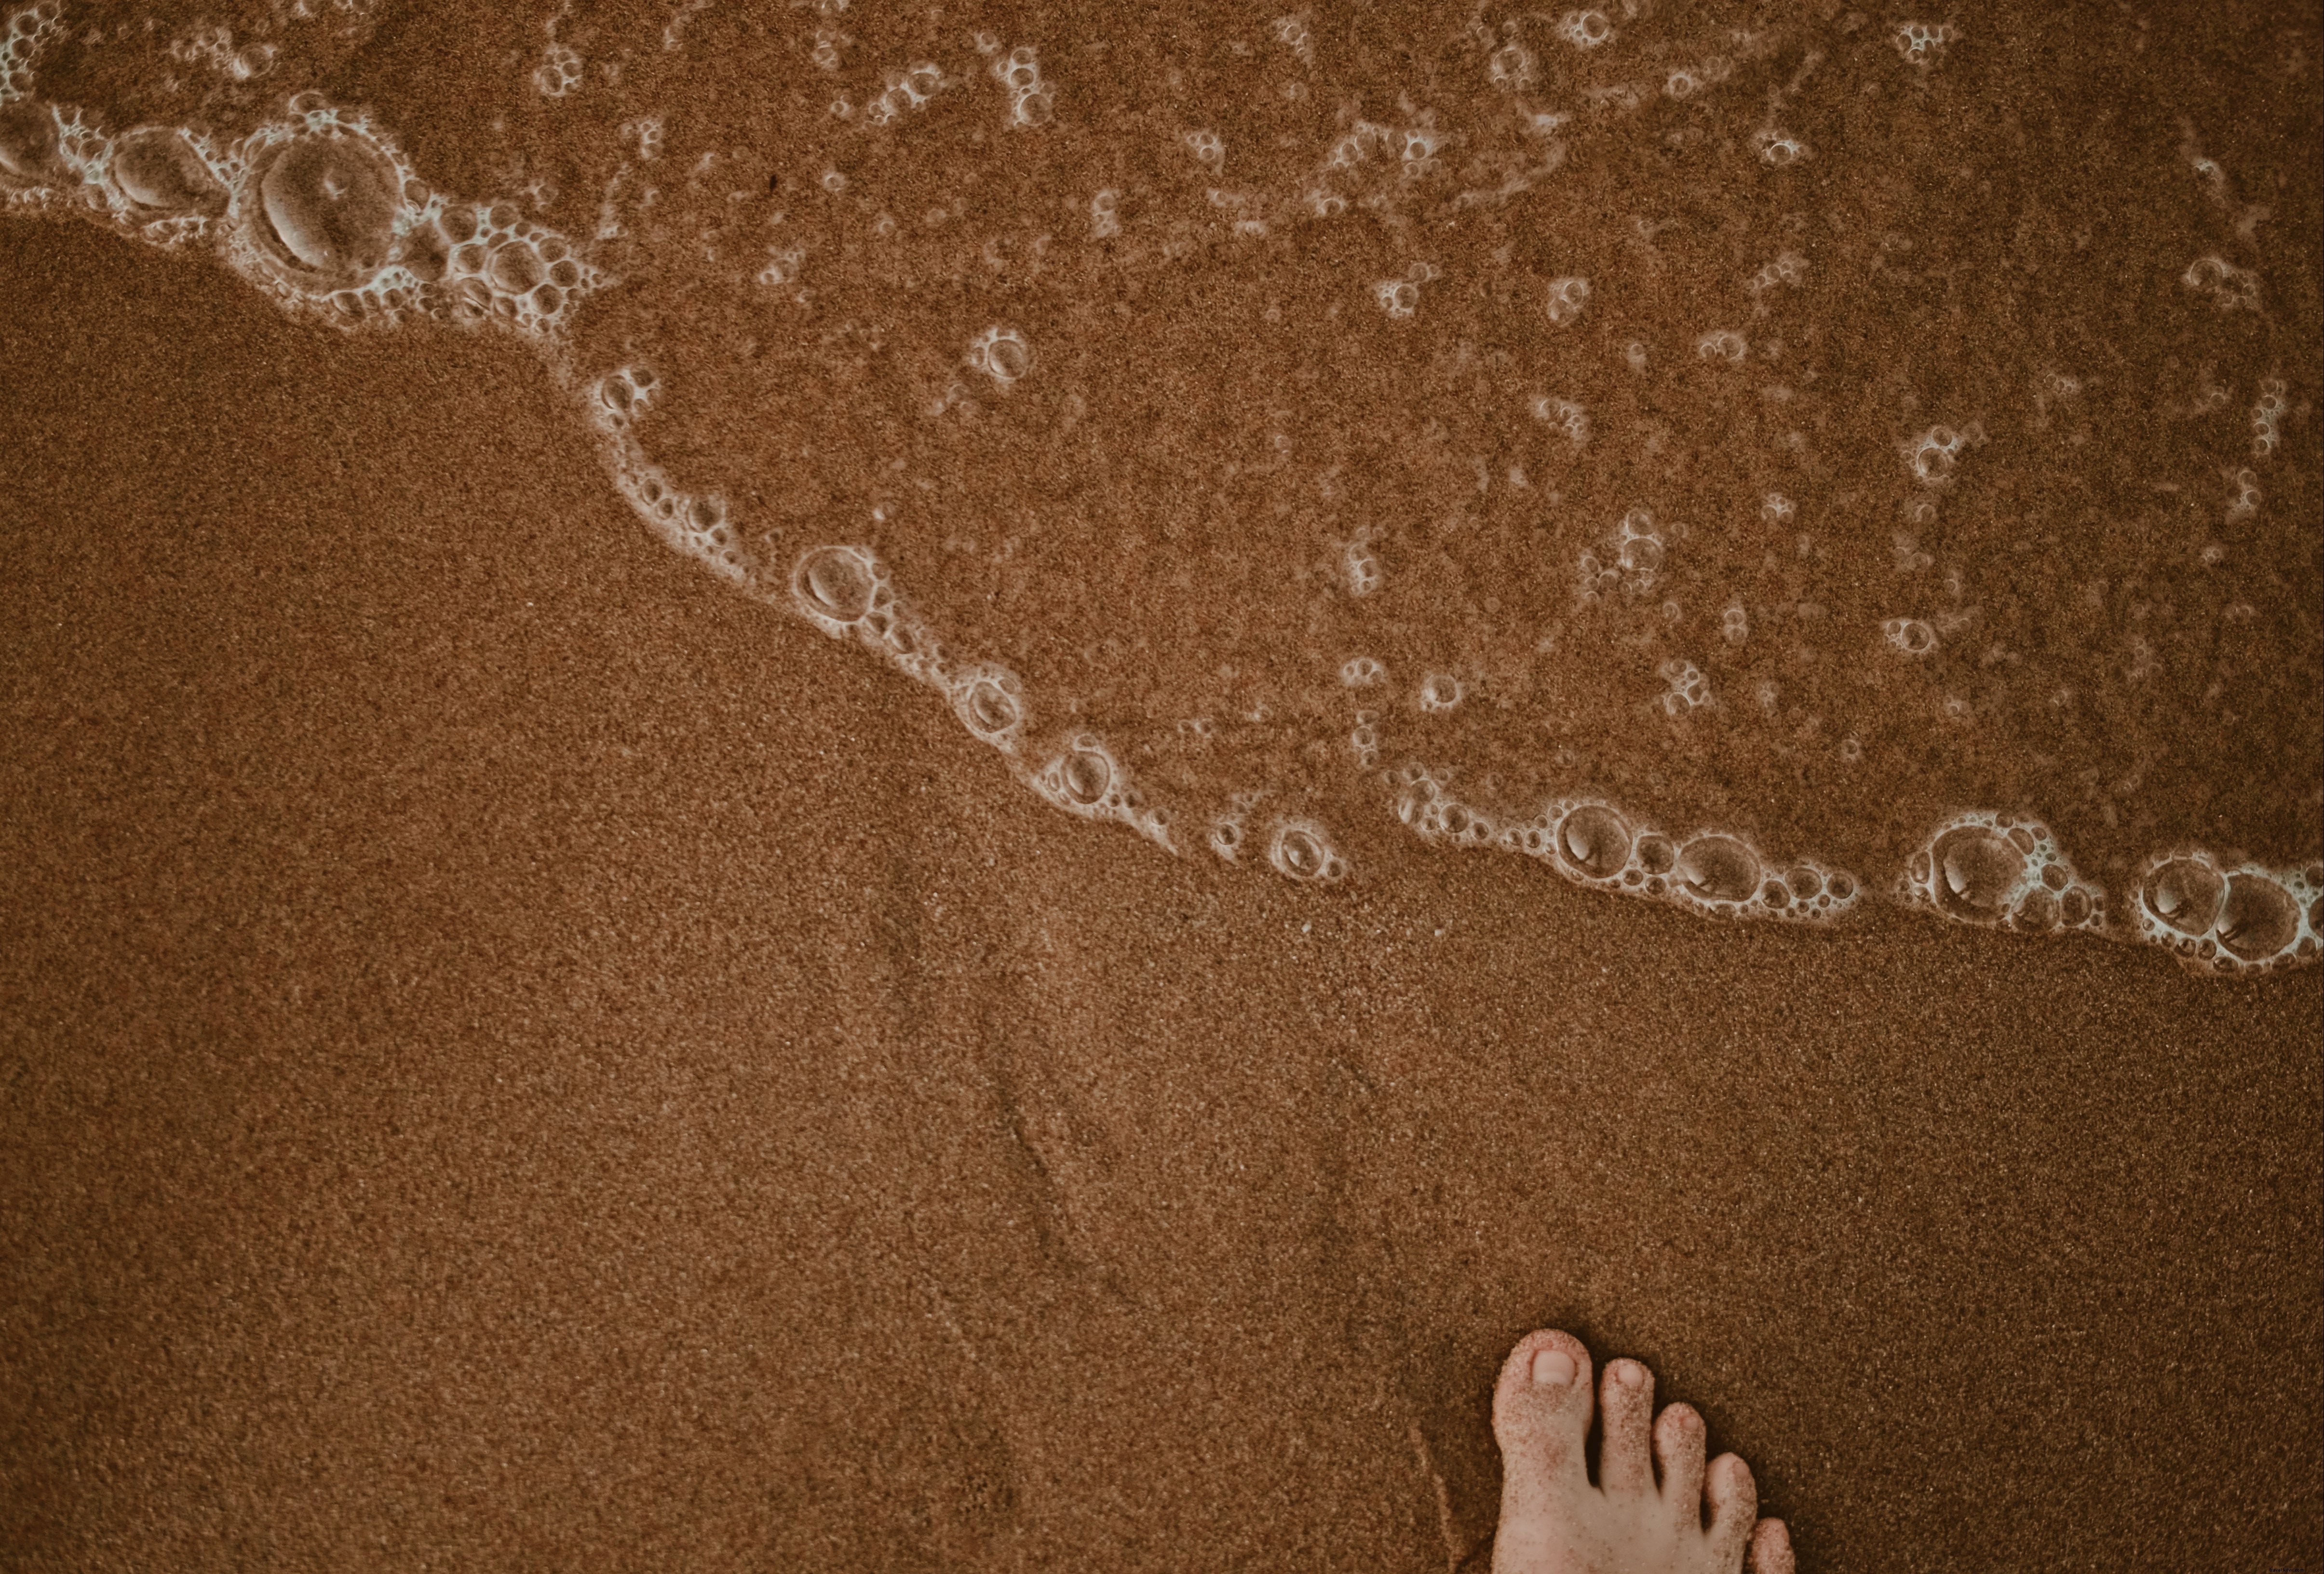 Pieds de sable, Photo de plage de sable